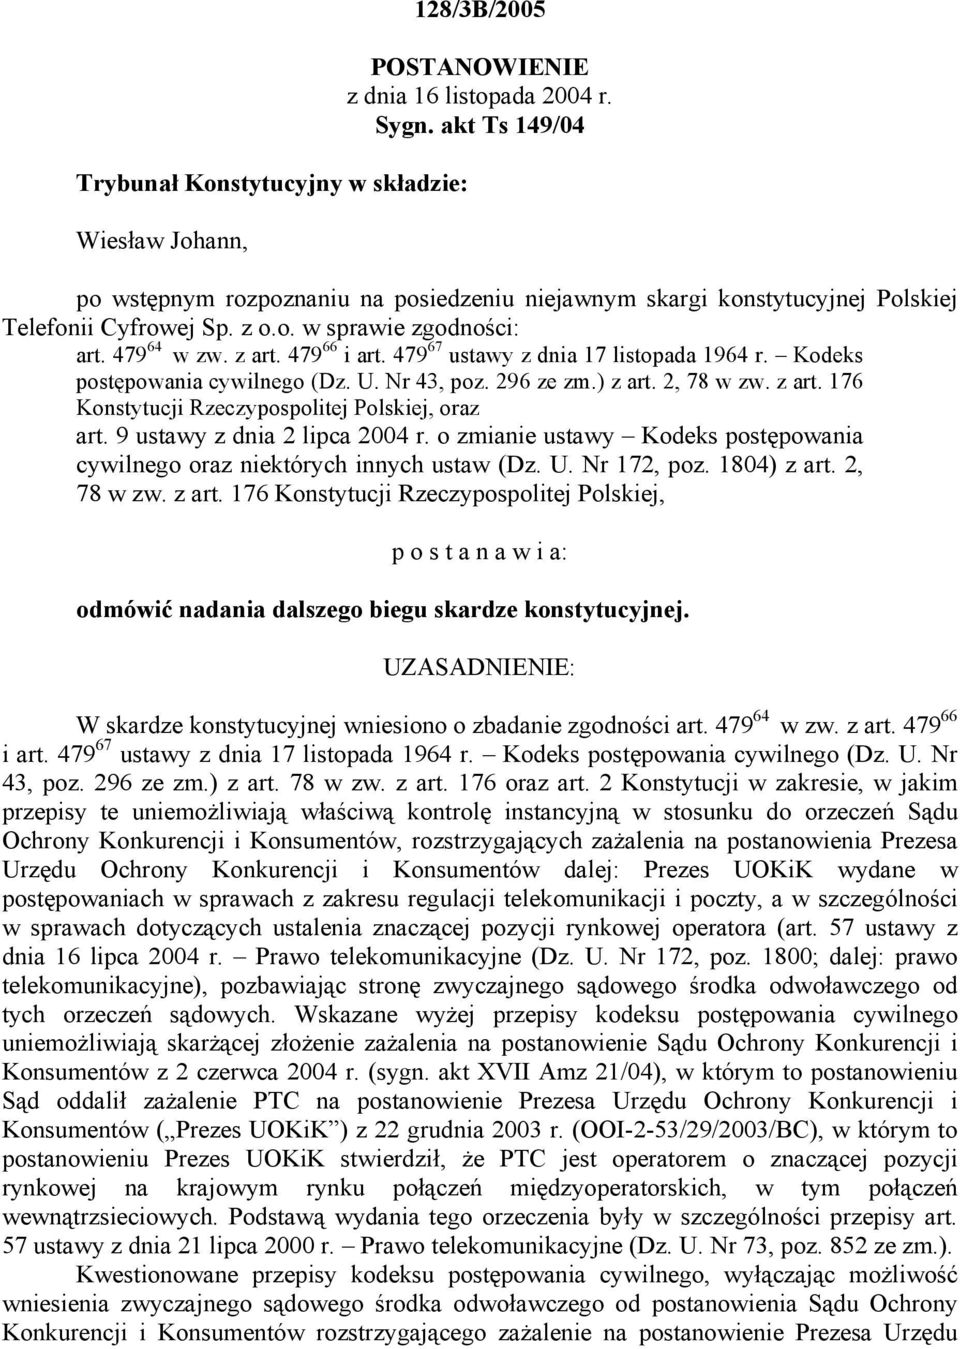 479 67 ustawy z dnia 17 listopada 1964 r. Kodeks postępowania cywilnego (Dz. U. Nr 43, poz. 296 ze zm.) z art. 2, 78 w zw. z art. 176 Konstytucji Rzeczypospolitej Polskiej, oraz art.